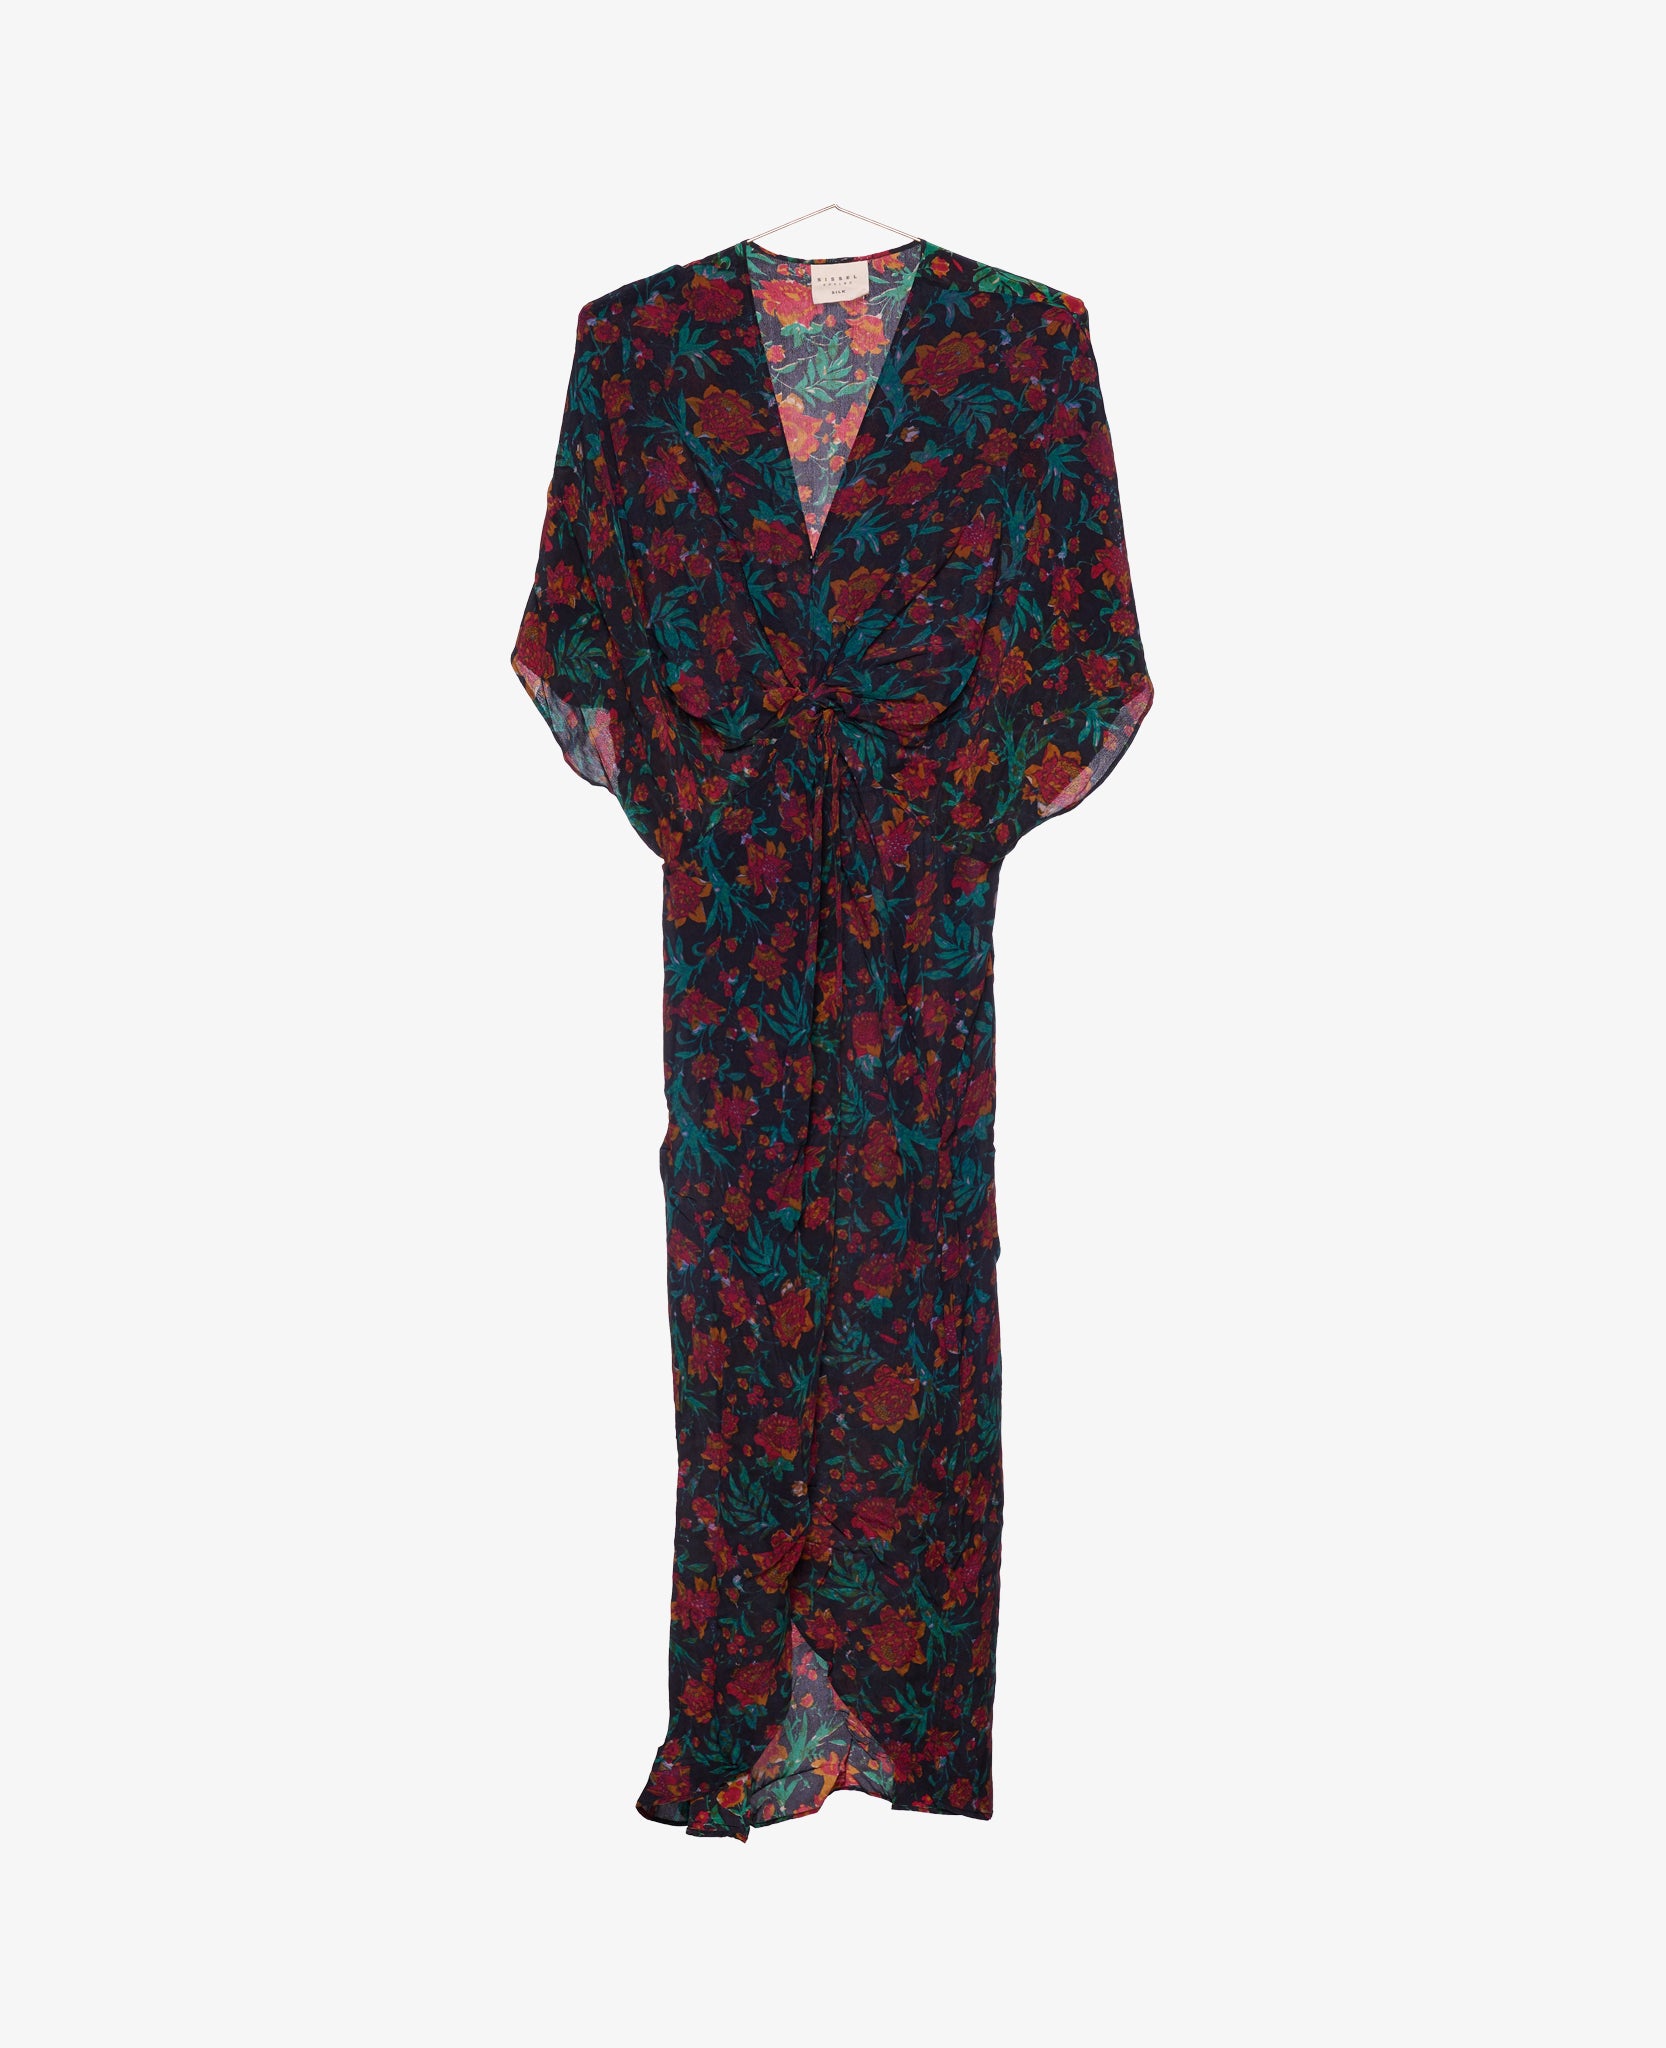 Monaco Silk Dress - No. 172 One-Size